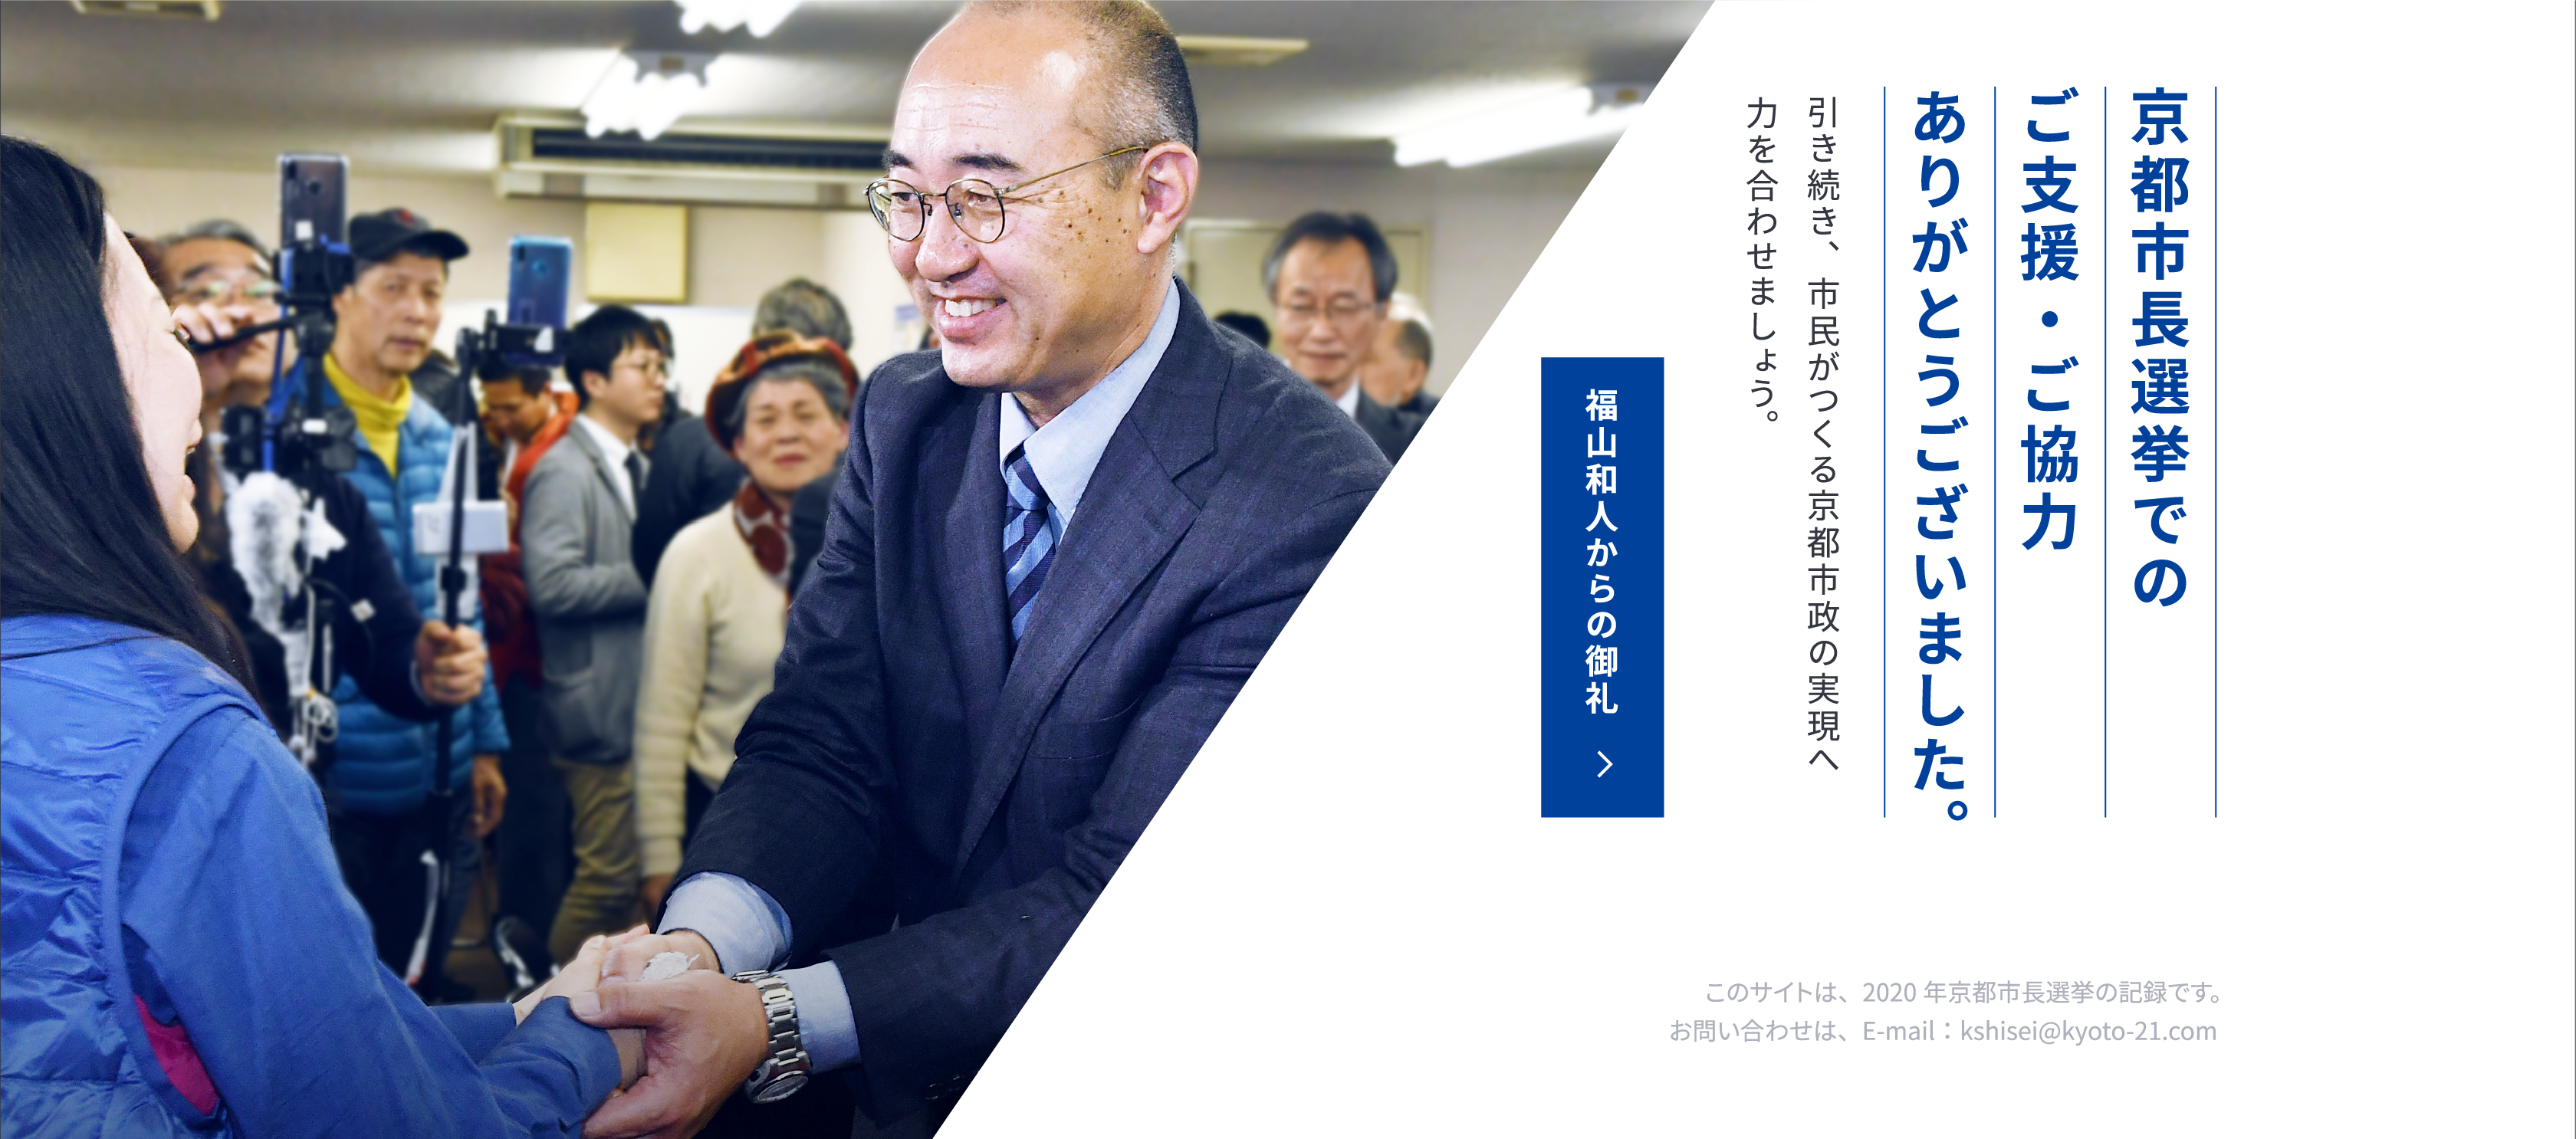 京都市長選挙でのご支援・ご協力ありがとうございました。引き続き、市民がつくる京都市政の実現へ力を合わせましょう。